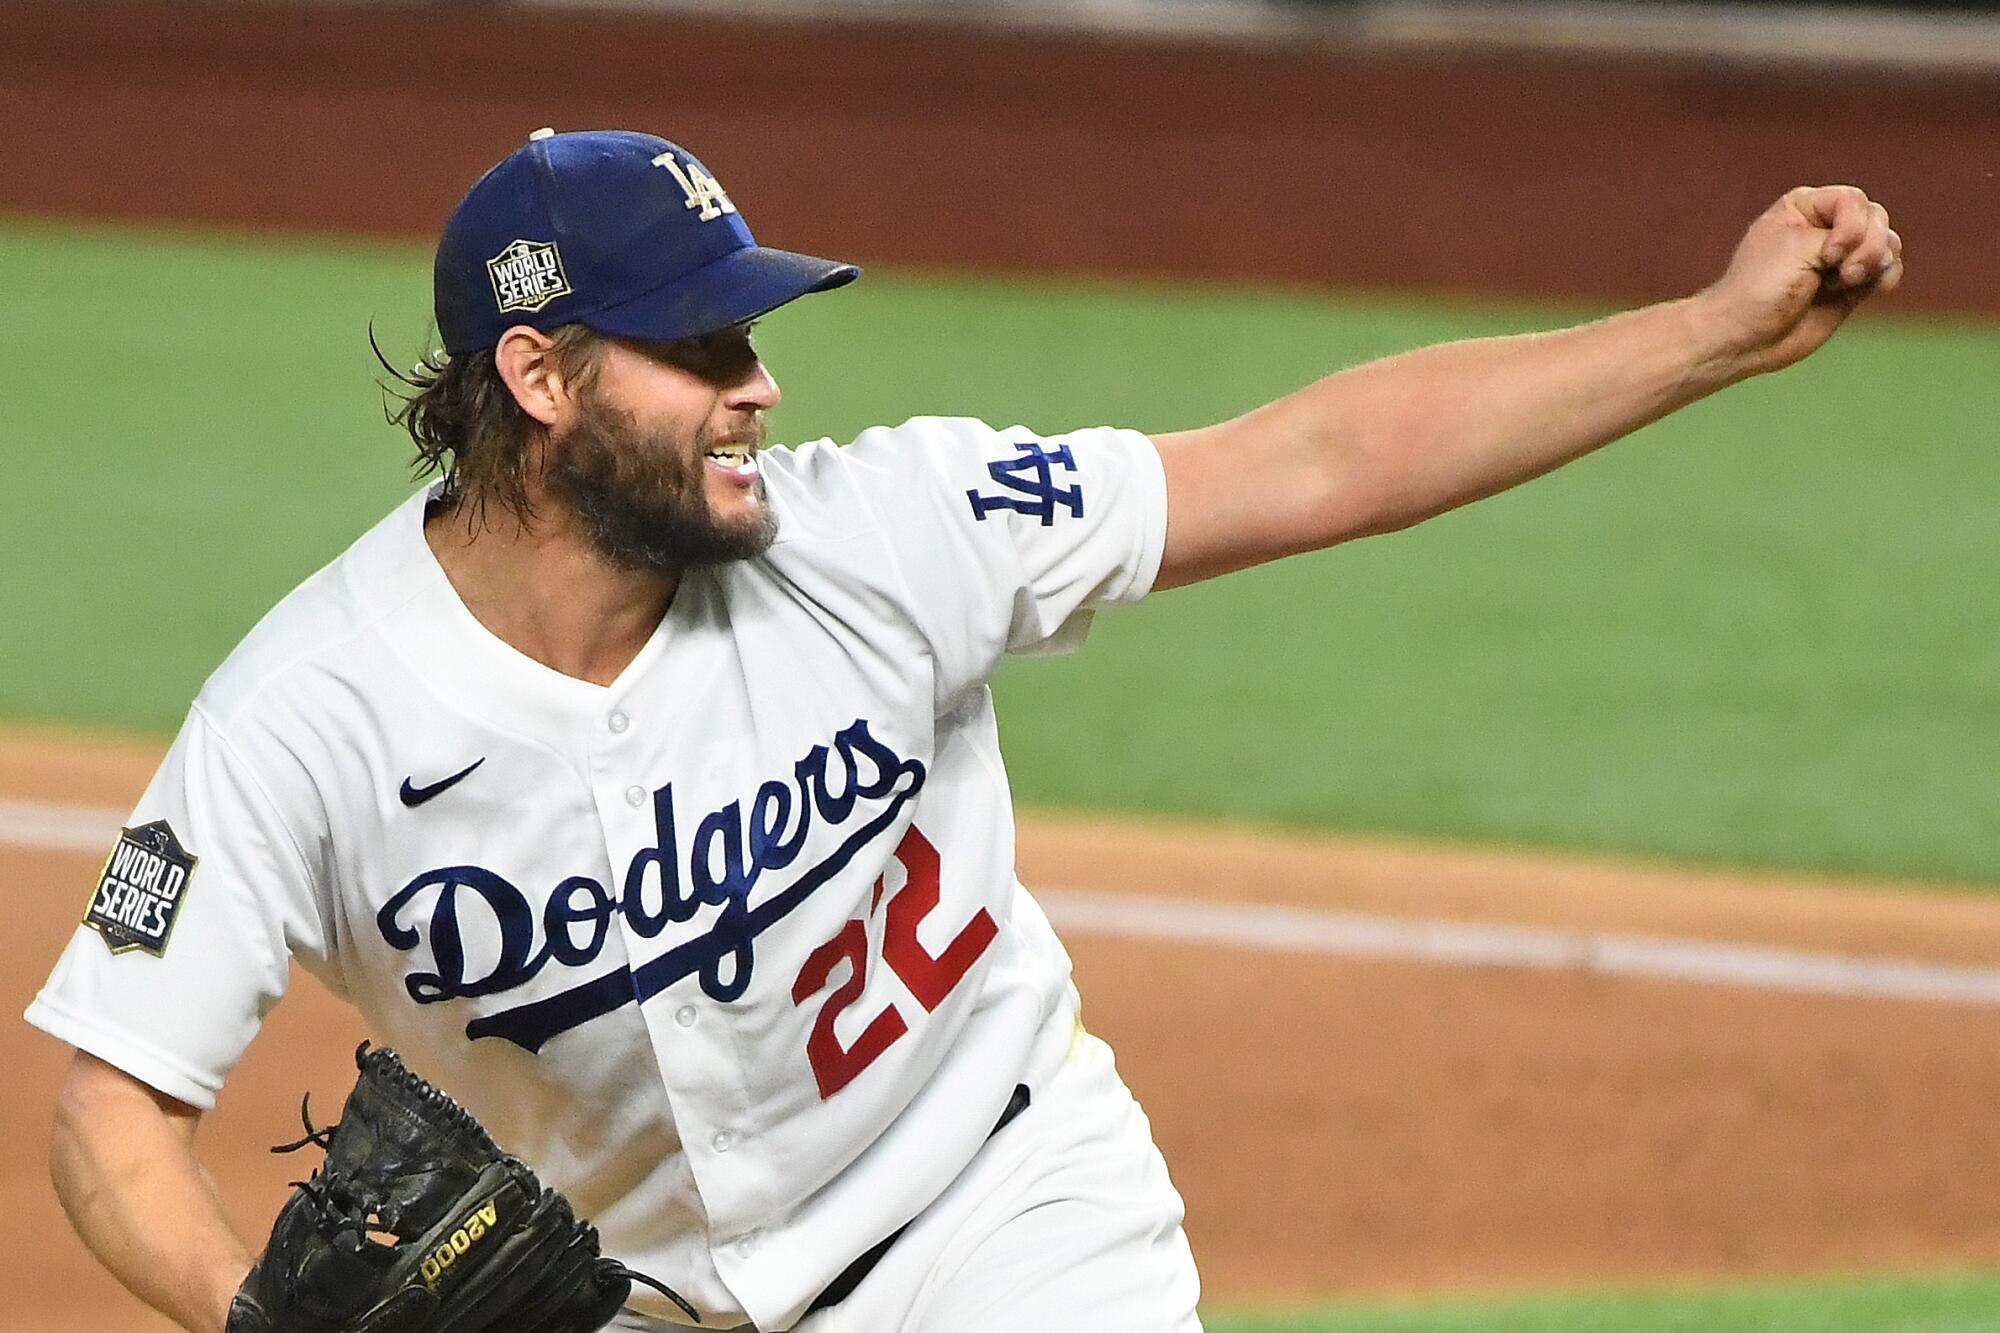 World Series Game 1 recap: Clayton Kershaw strikes out 11, Dodgers